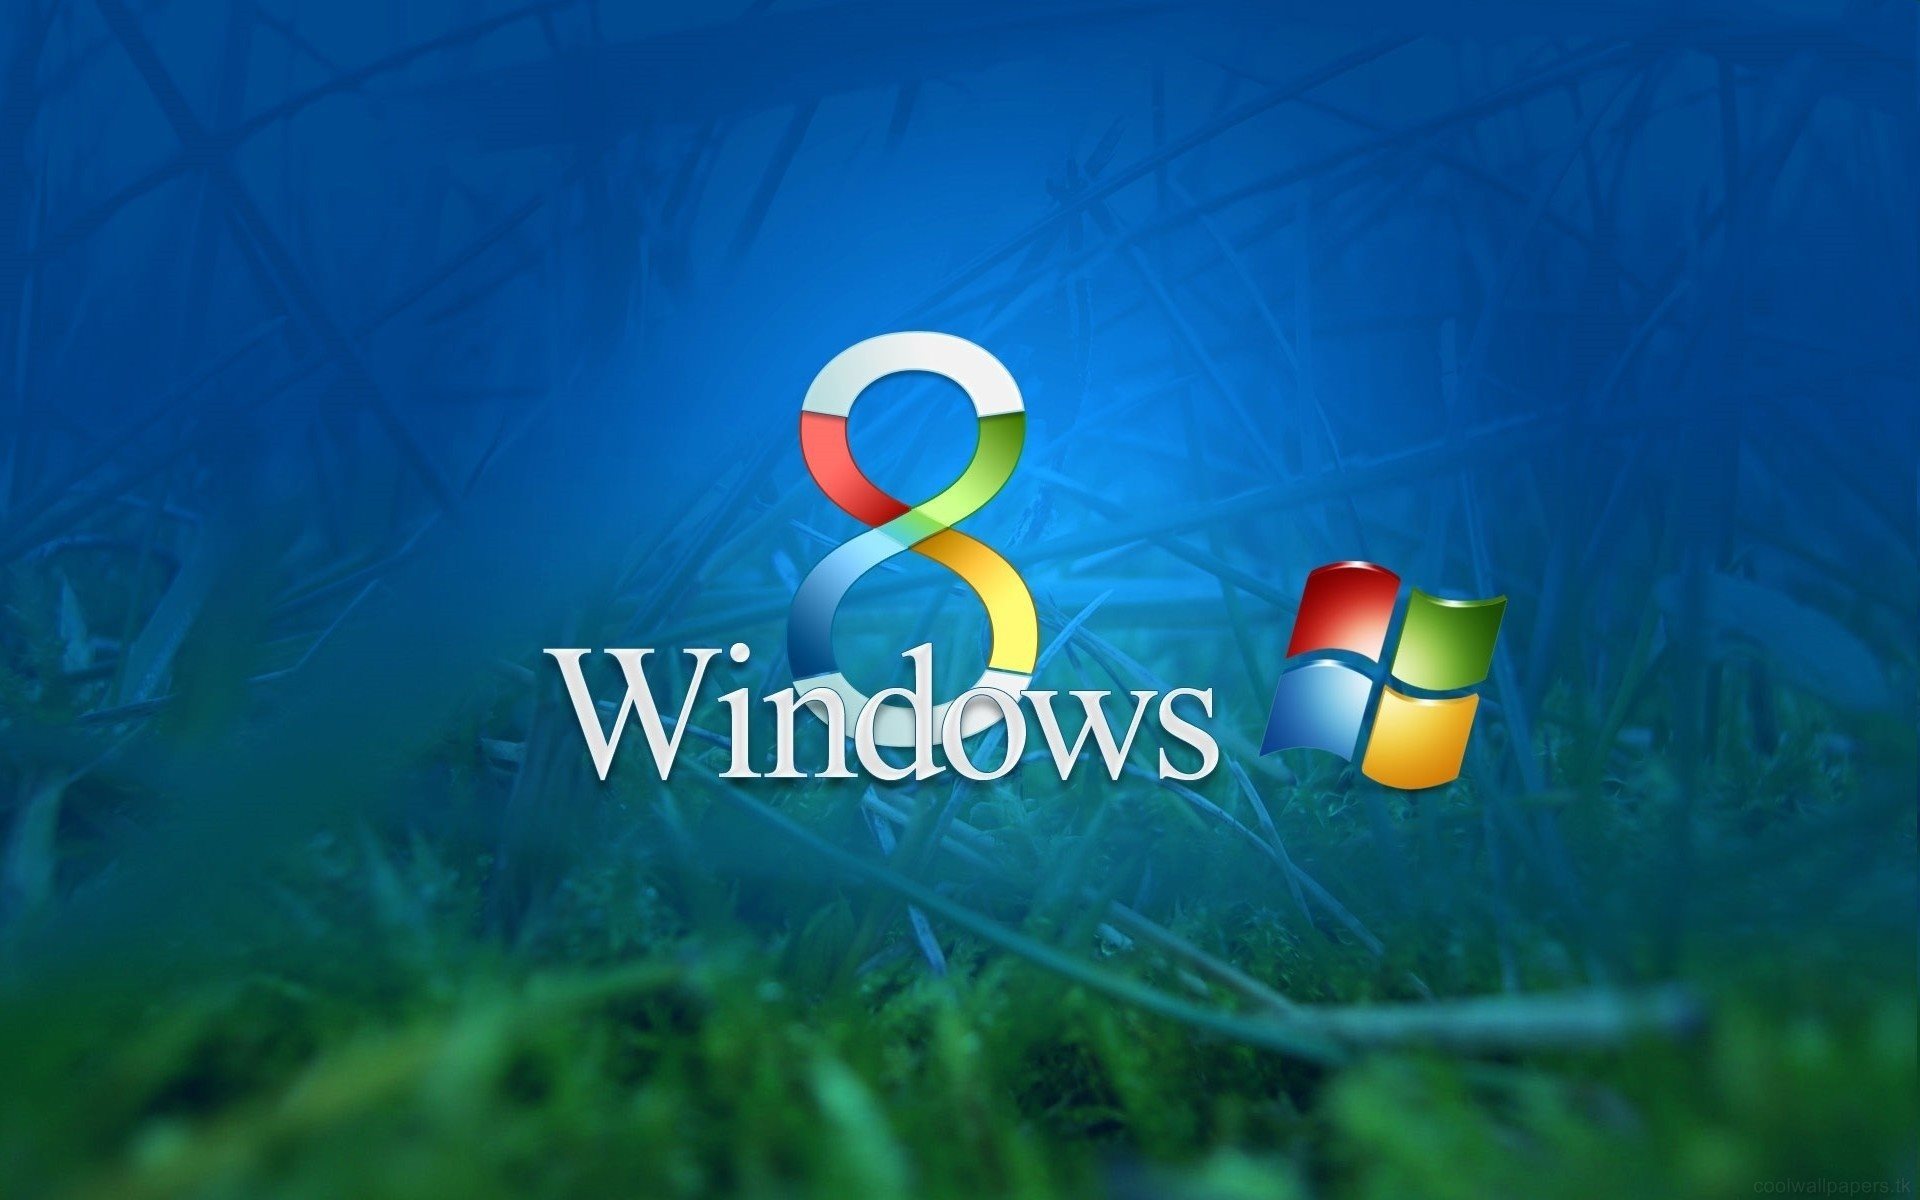 ダウンロード画像 八 Windows8 エンブレム Windows 画面の解像度 19x10 壁紙デスクトップ上